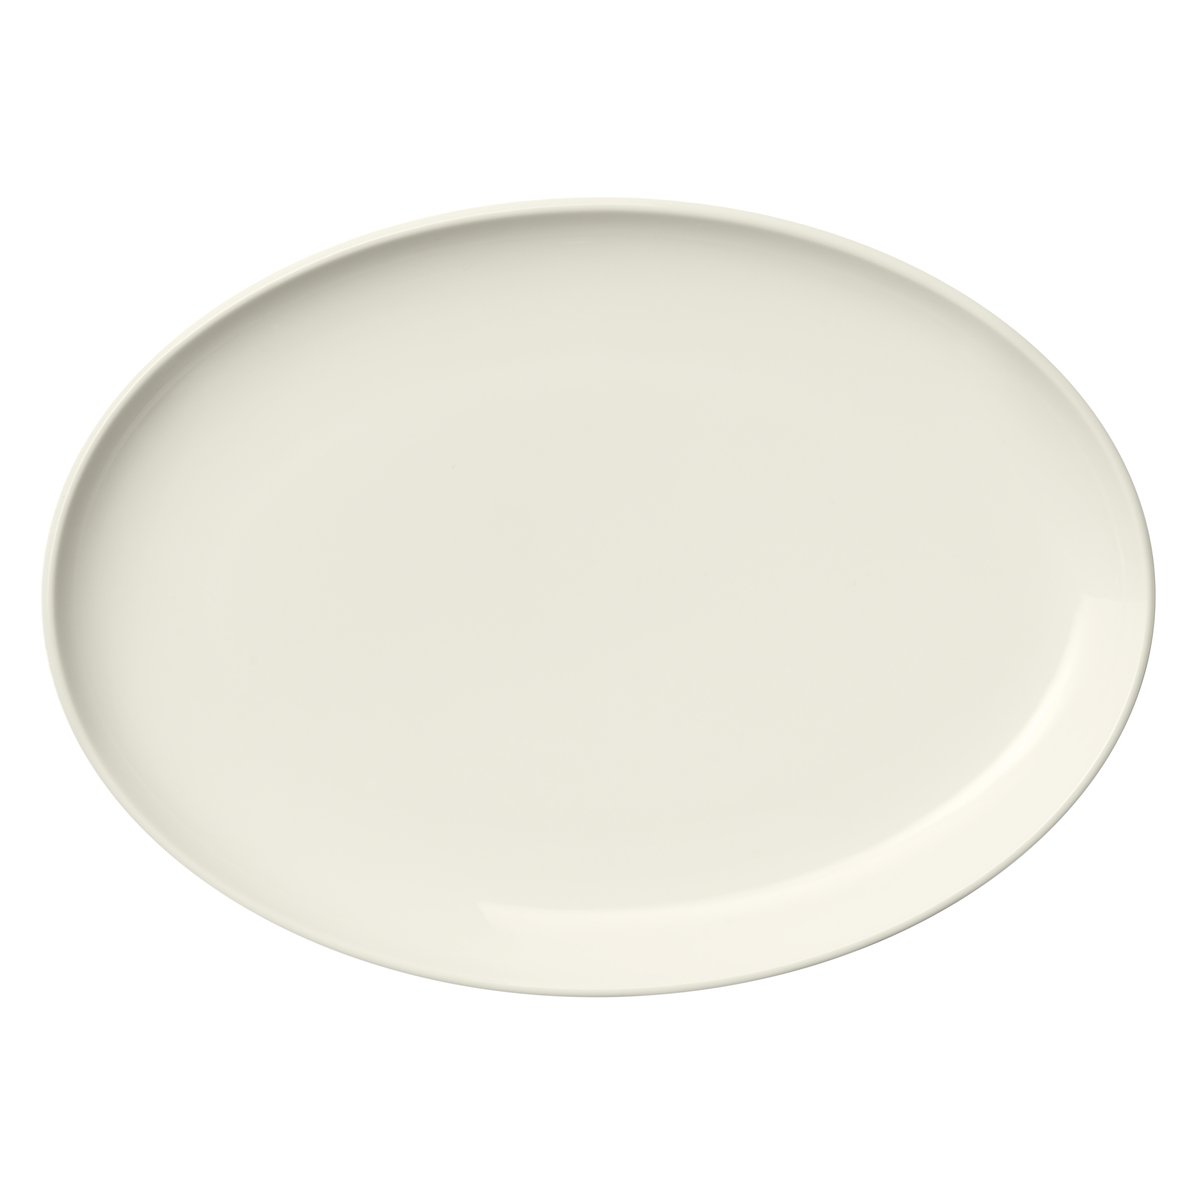 Iittala Essence lautanen ovaali 25 cm Valkoinen